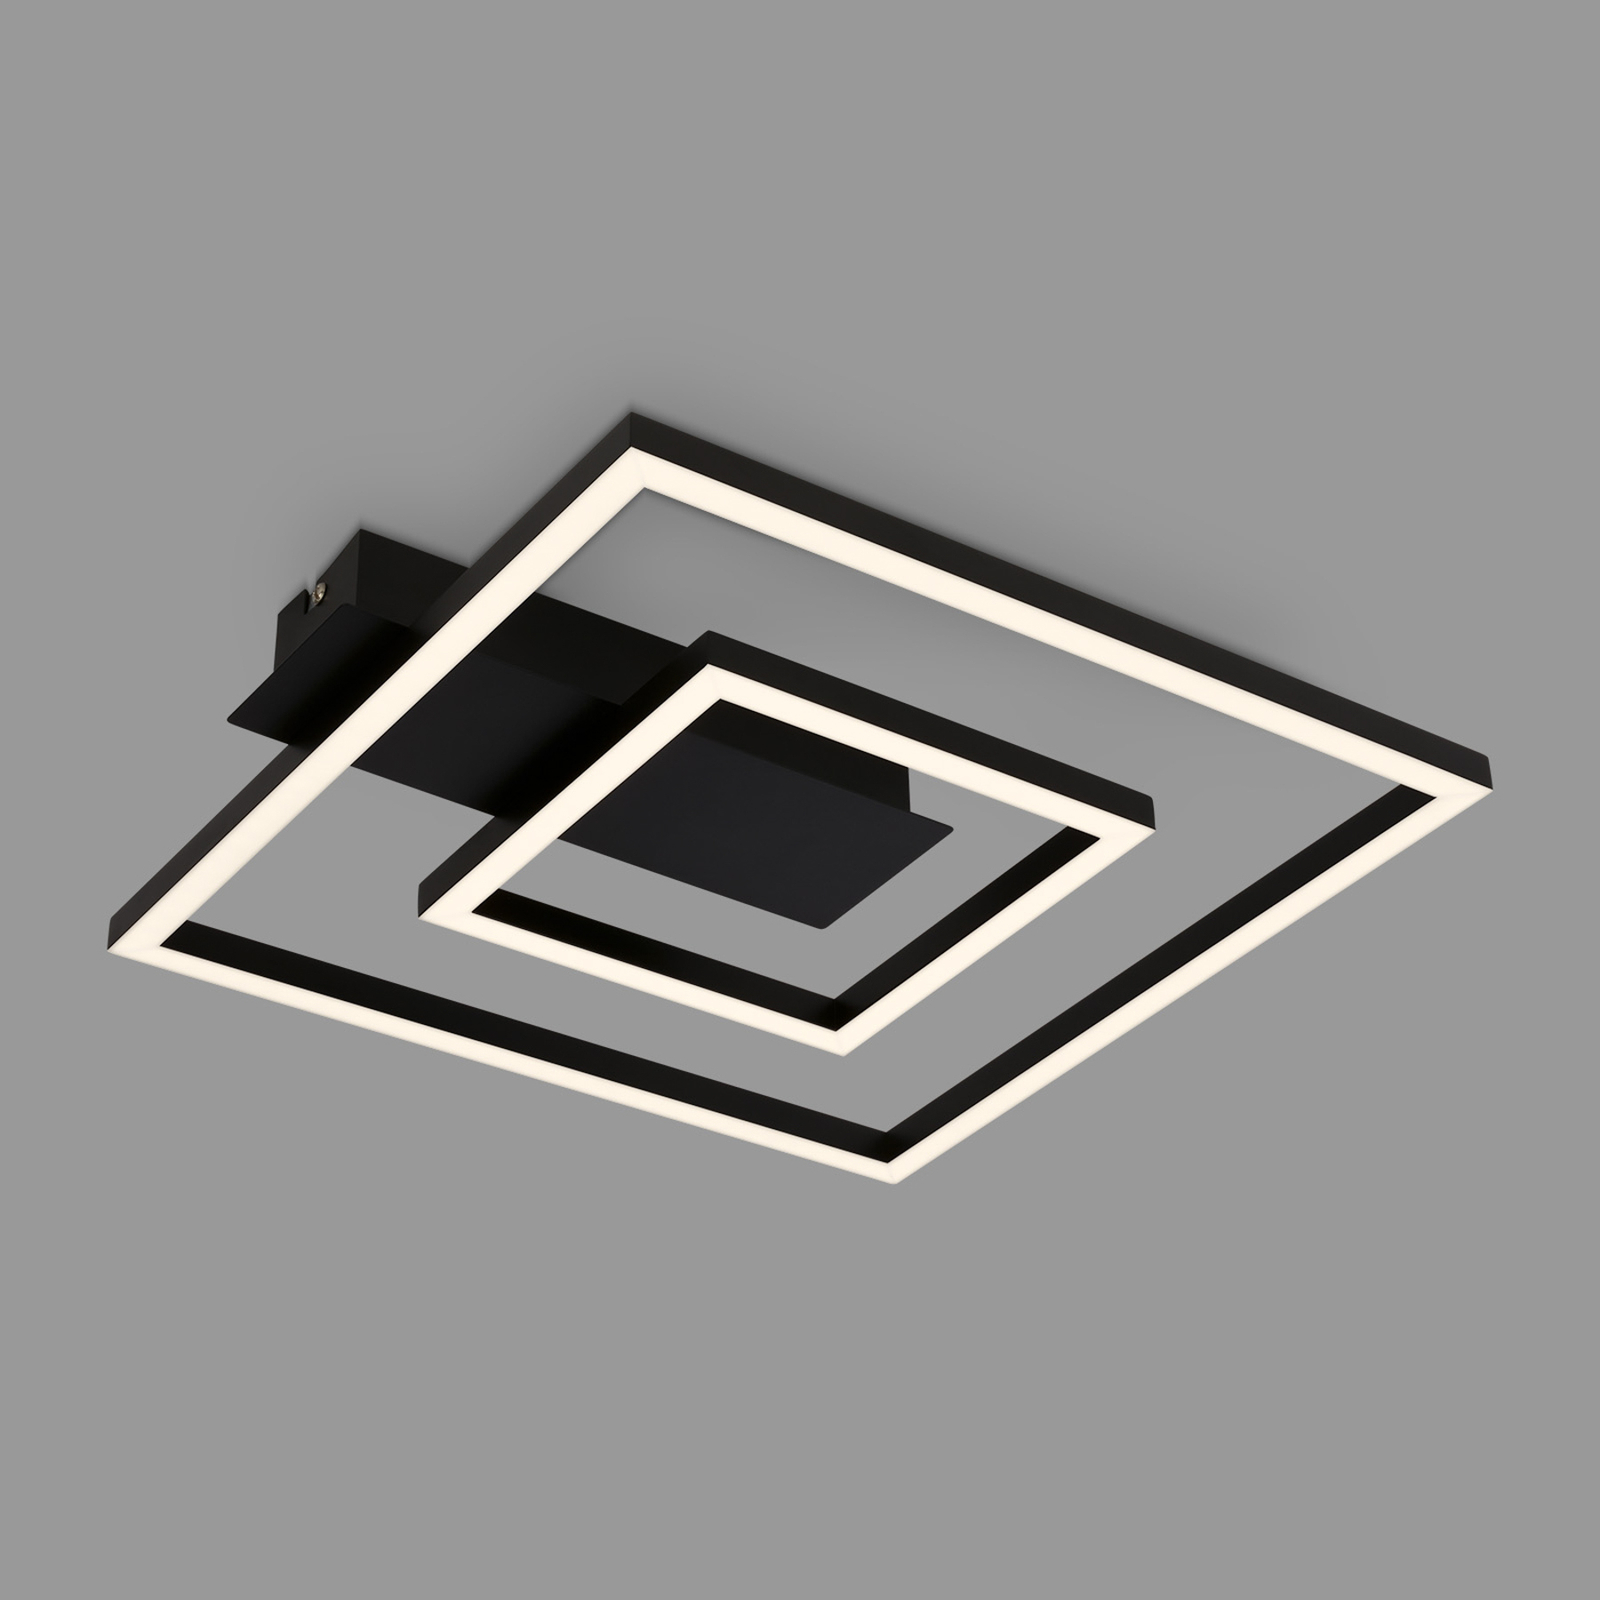 LED-Deckenleuchte 3772 mit 2 Rahmen, schwarz